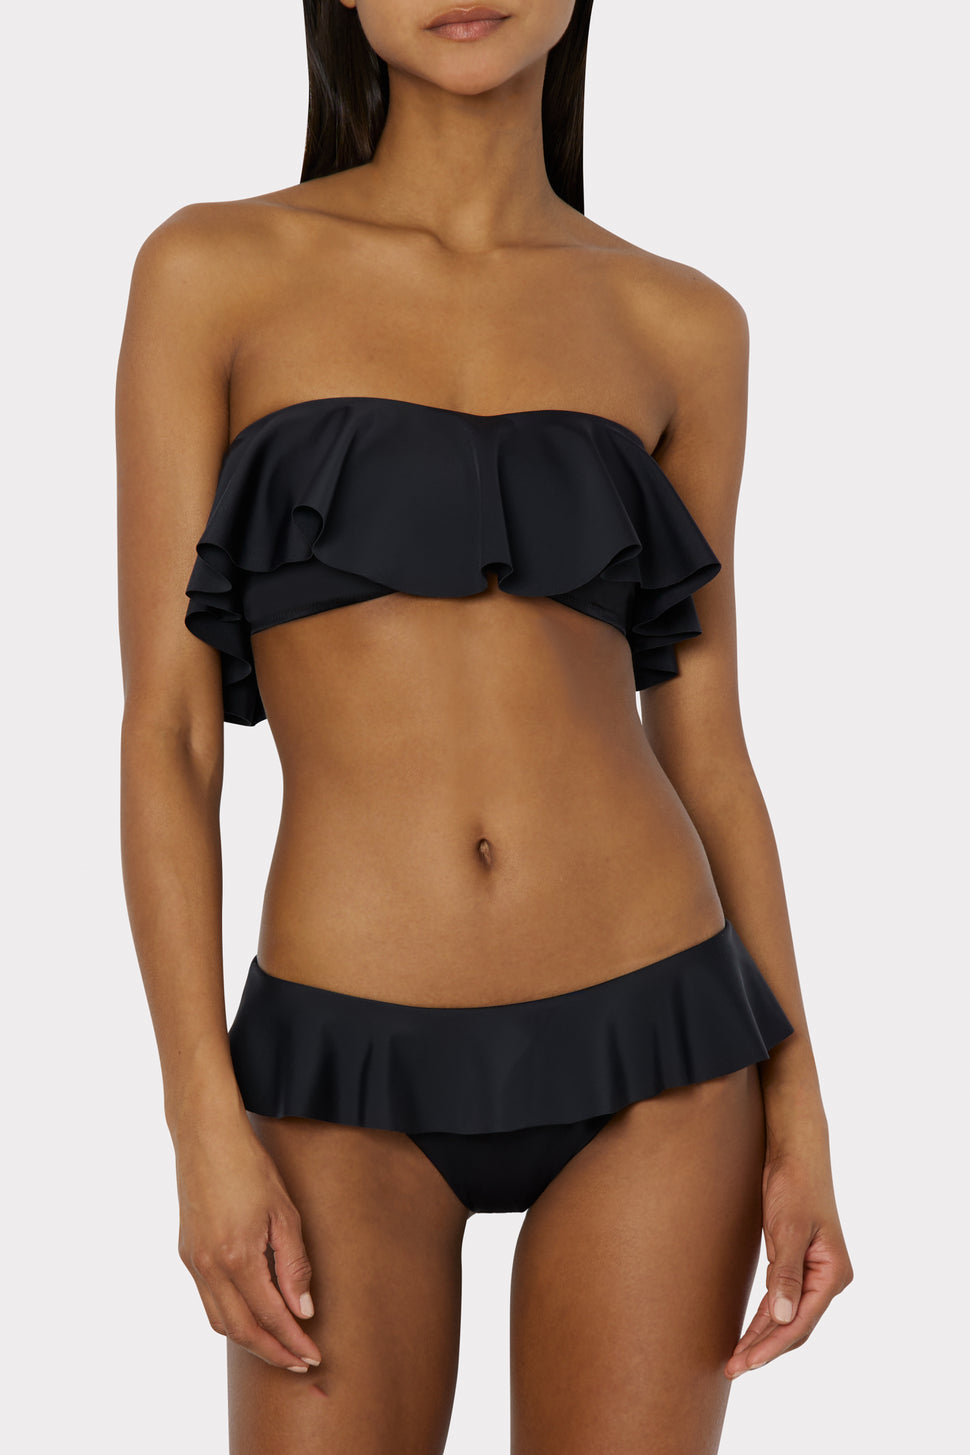 Bandeau MILLY Top Women\'s Black Bikini Ruffle |